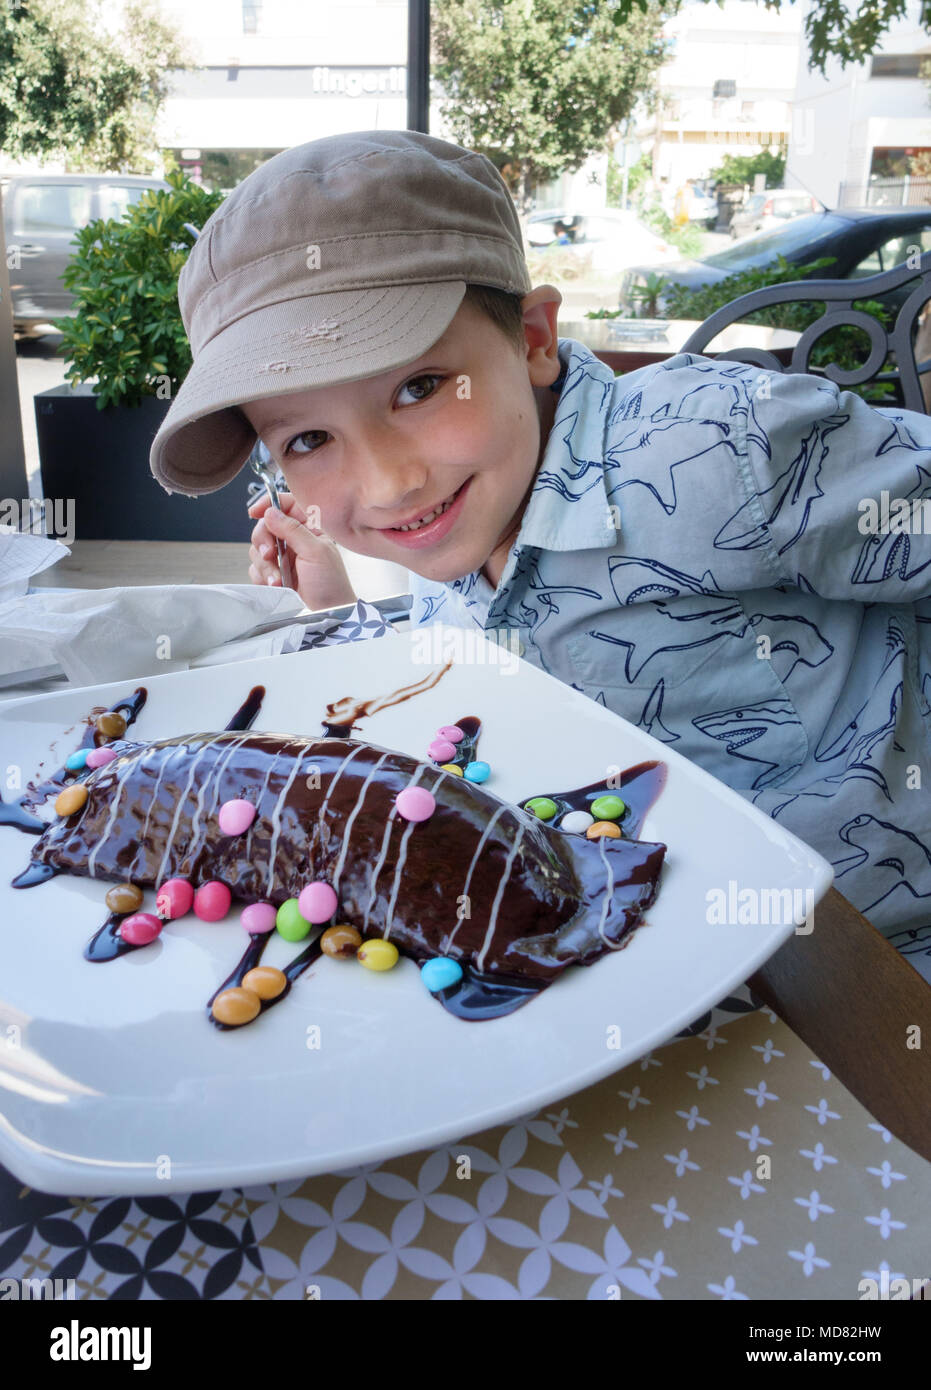 Ritratto del ragazzino con dessert al cioccolato sulla piastra di ristorante, Heraklion, Grecia Foto Stock